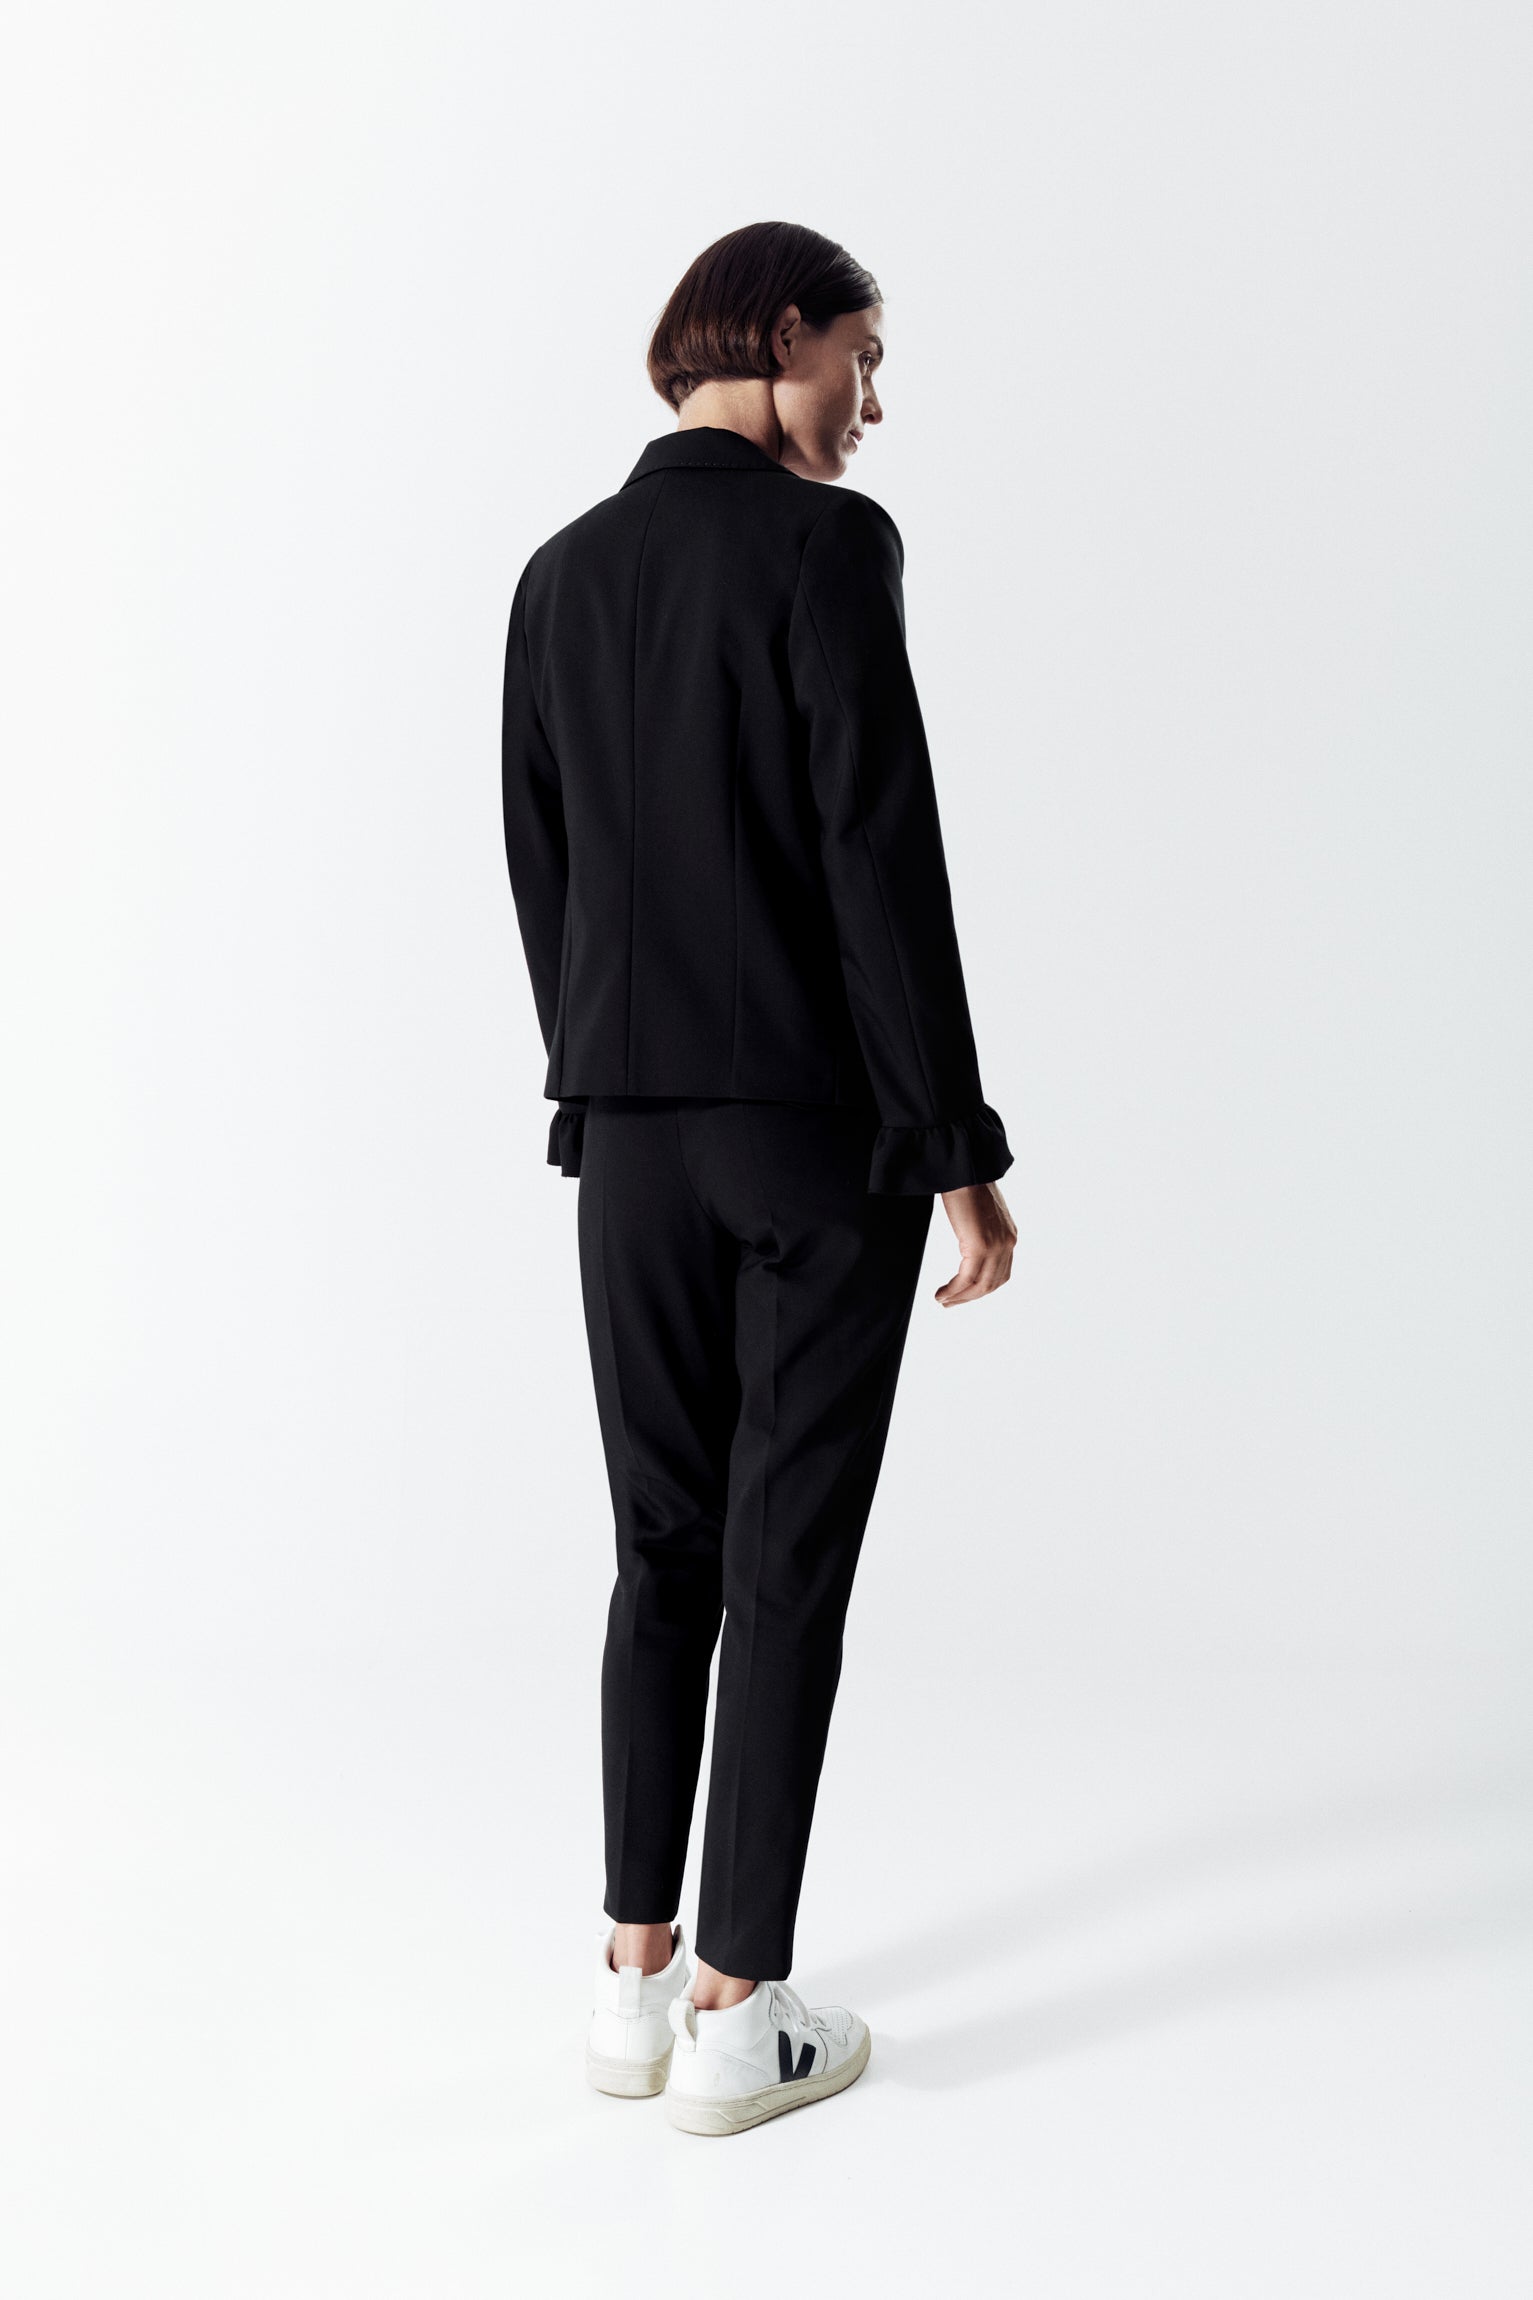 Lee-Ann BLACK Suit